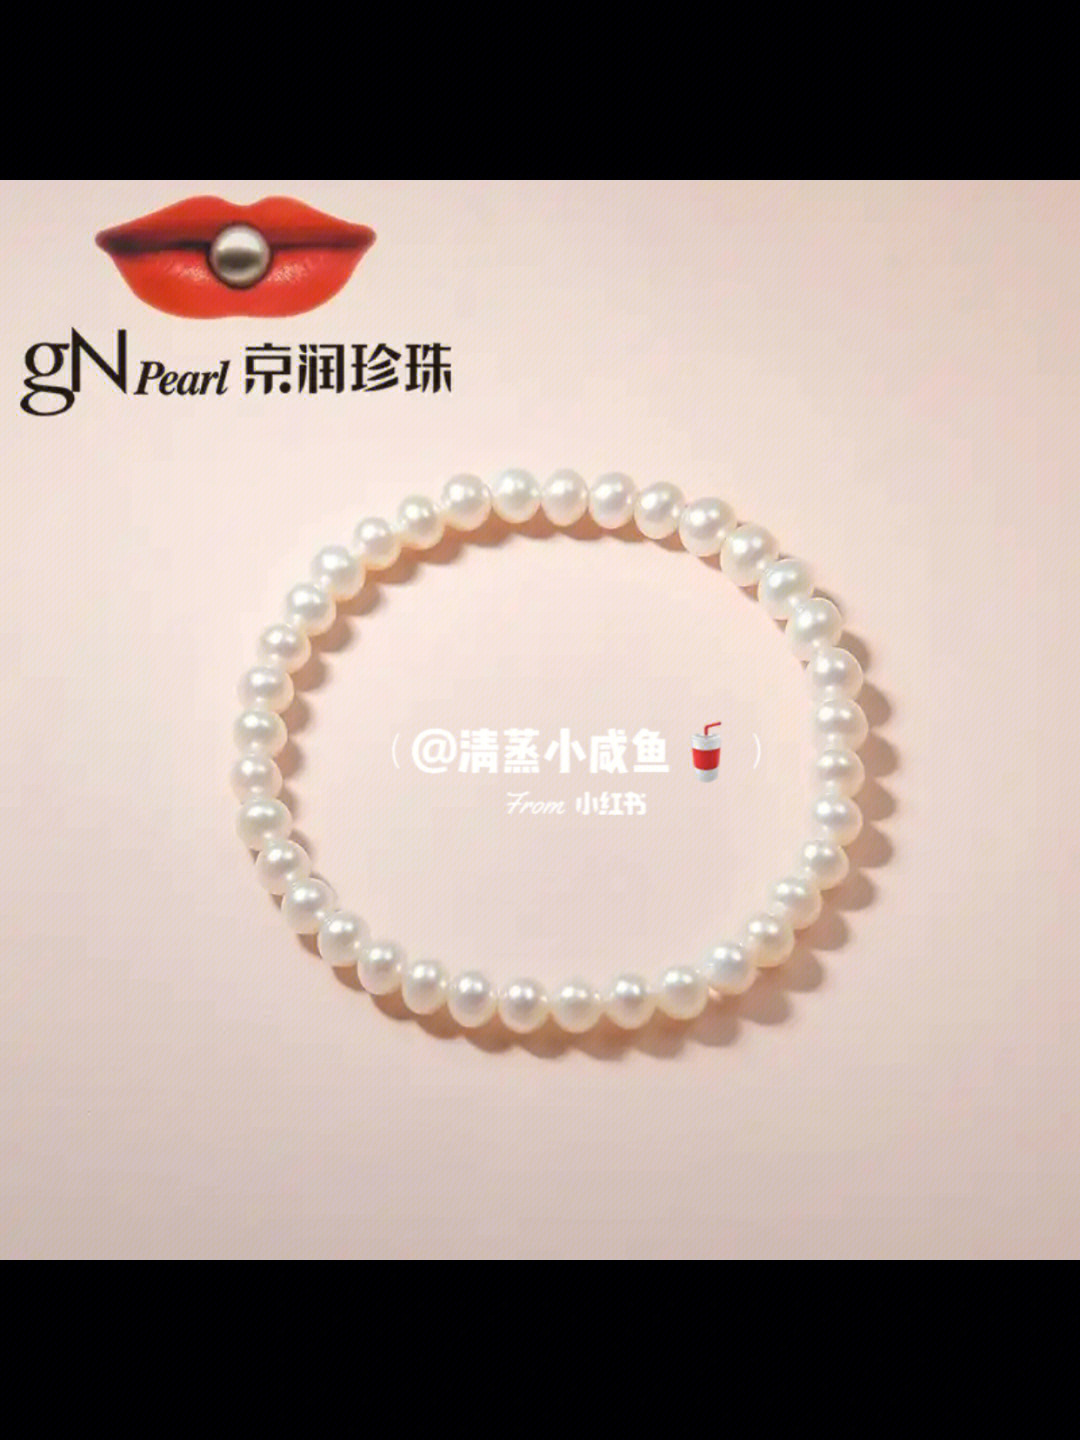 京润珍珠logo图片图片